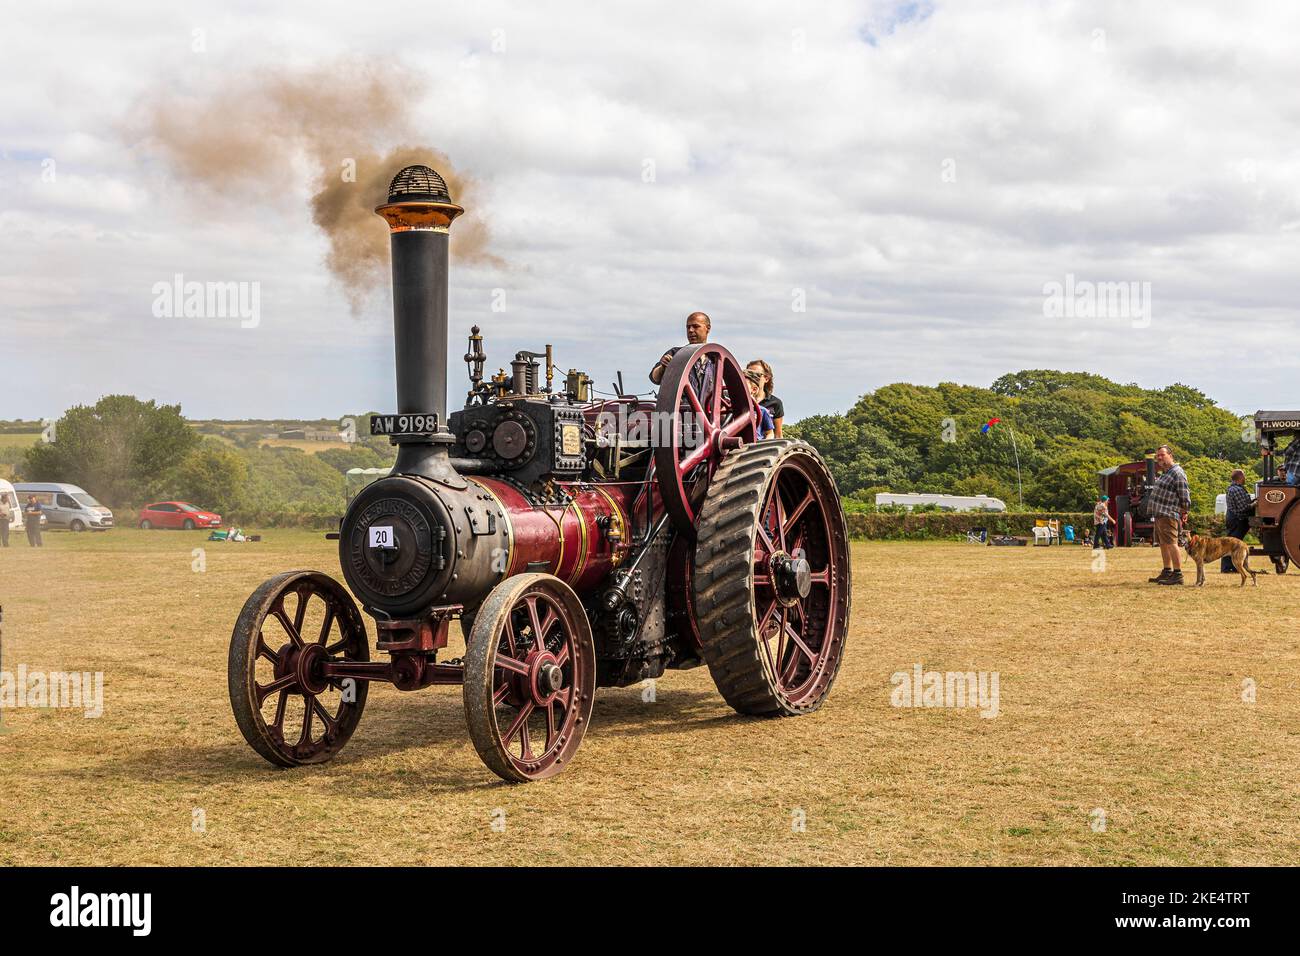 Rallye Great Steam Engine à l'ouest de l'Angleterre. Modèles et roues à vapeur pleine grandeur et moteurs de traction exposés Banque D'Images